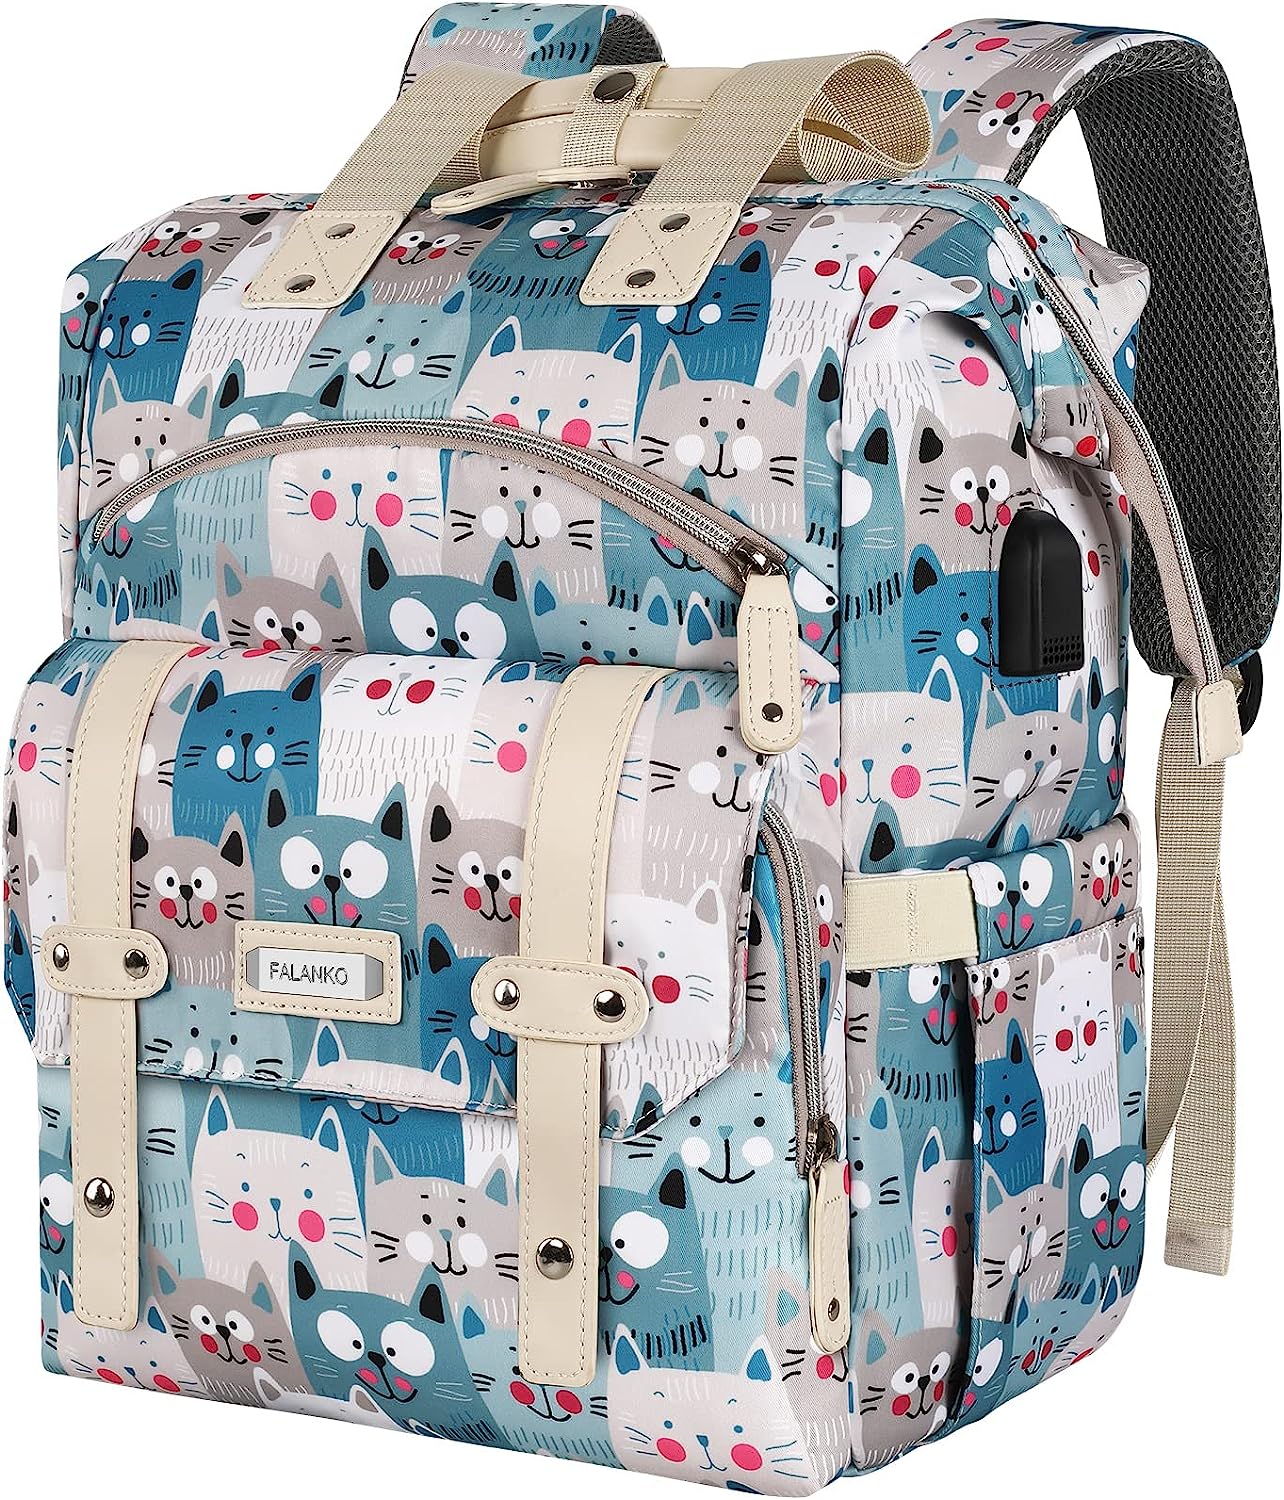 FALANKO Laptop Backpack for Women,Teacher Doctor Nurse [...]